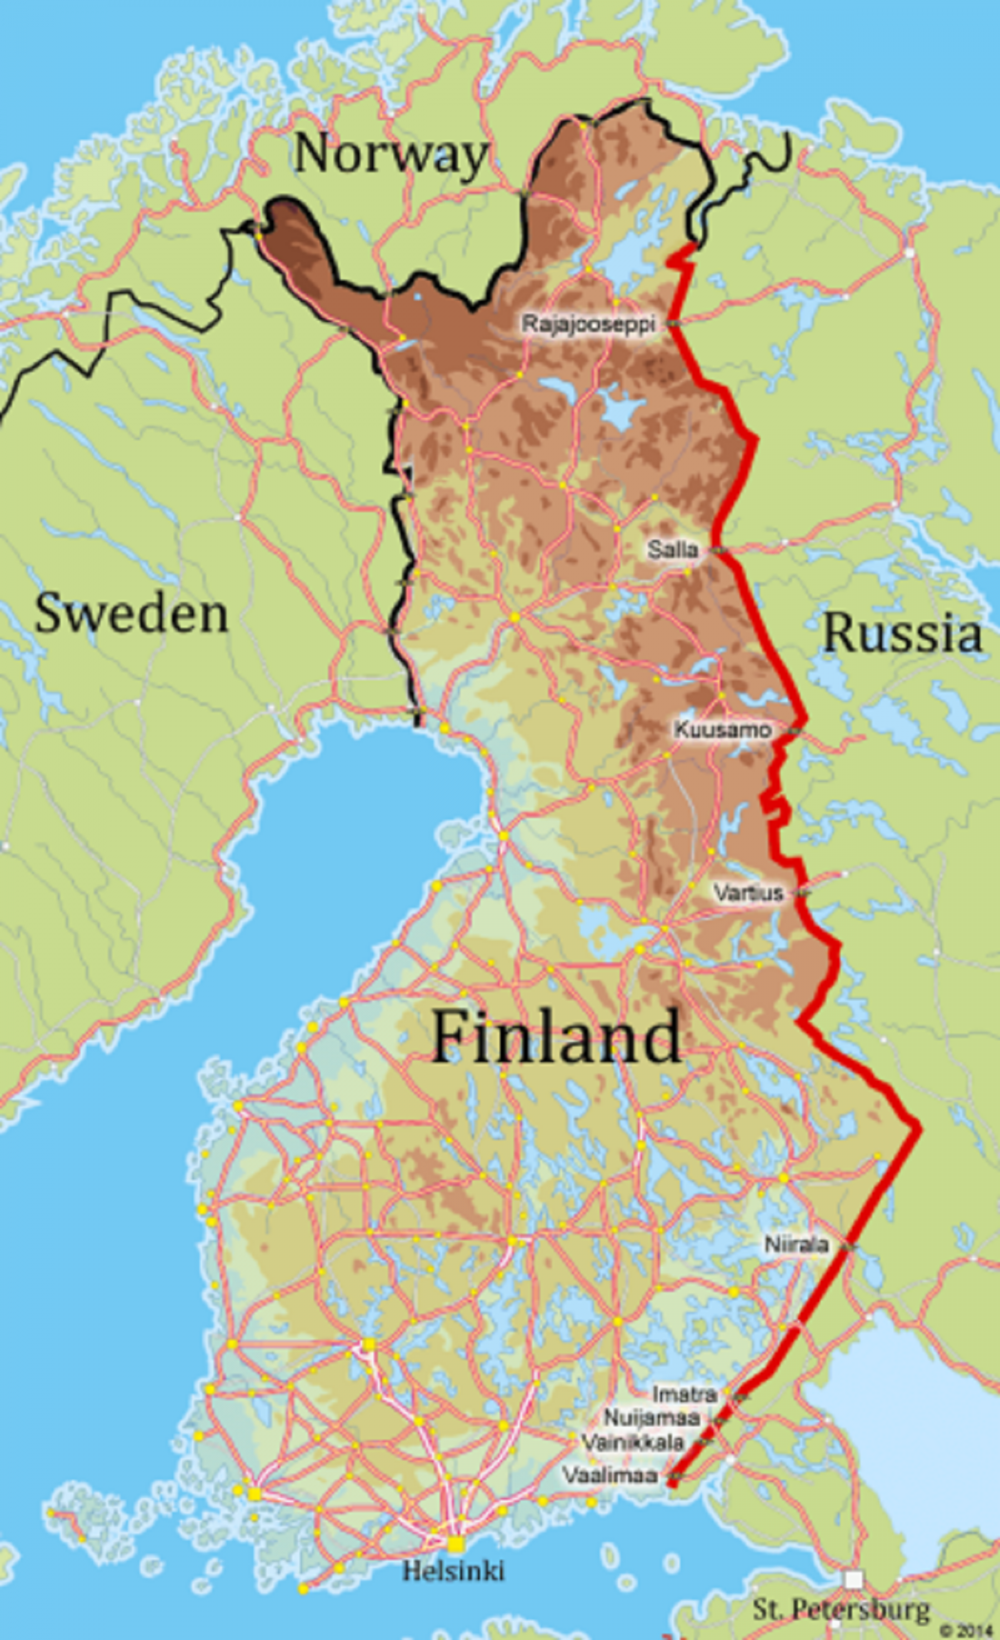 Finlandia Presidente Niinisto Attento A Vicende Di Russia E Bielorussia